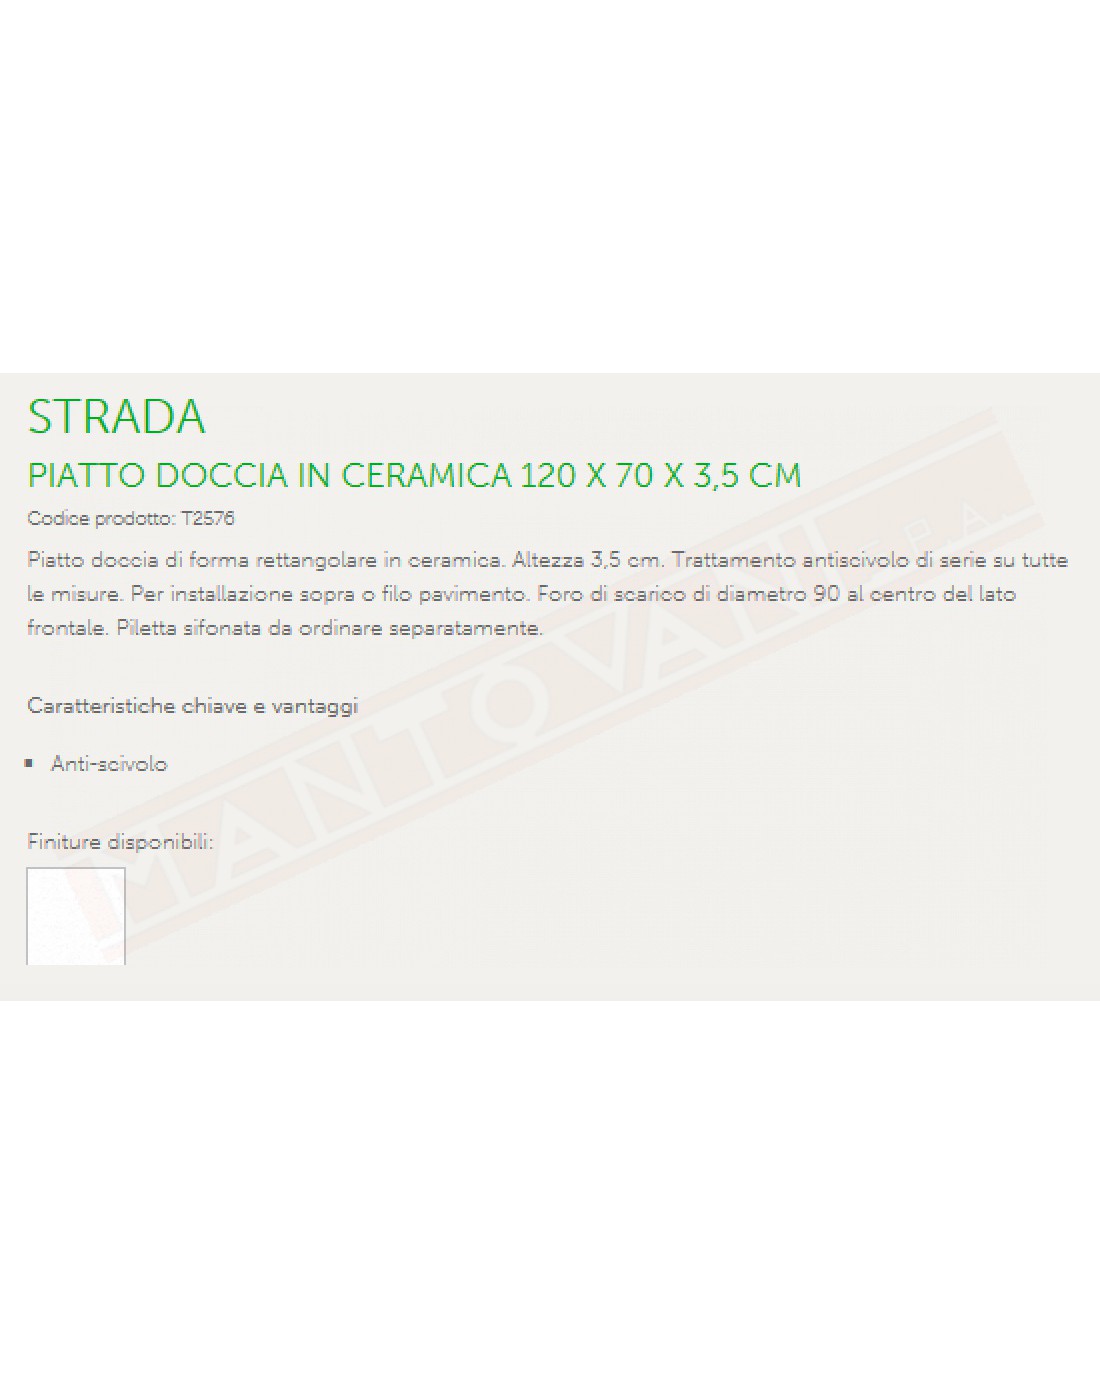 IDEAL STANDARD STRADA PIATTO DOCCIA 120X70 H 3.5 CM CON TRATTAMENTO ANTISCIVOLO FORO DIAMETRO 90 MM AL CENTRO DEL LATO FRONTALE